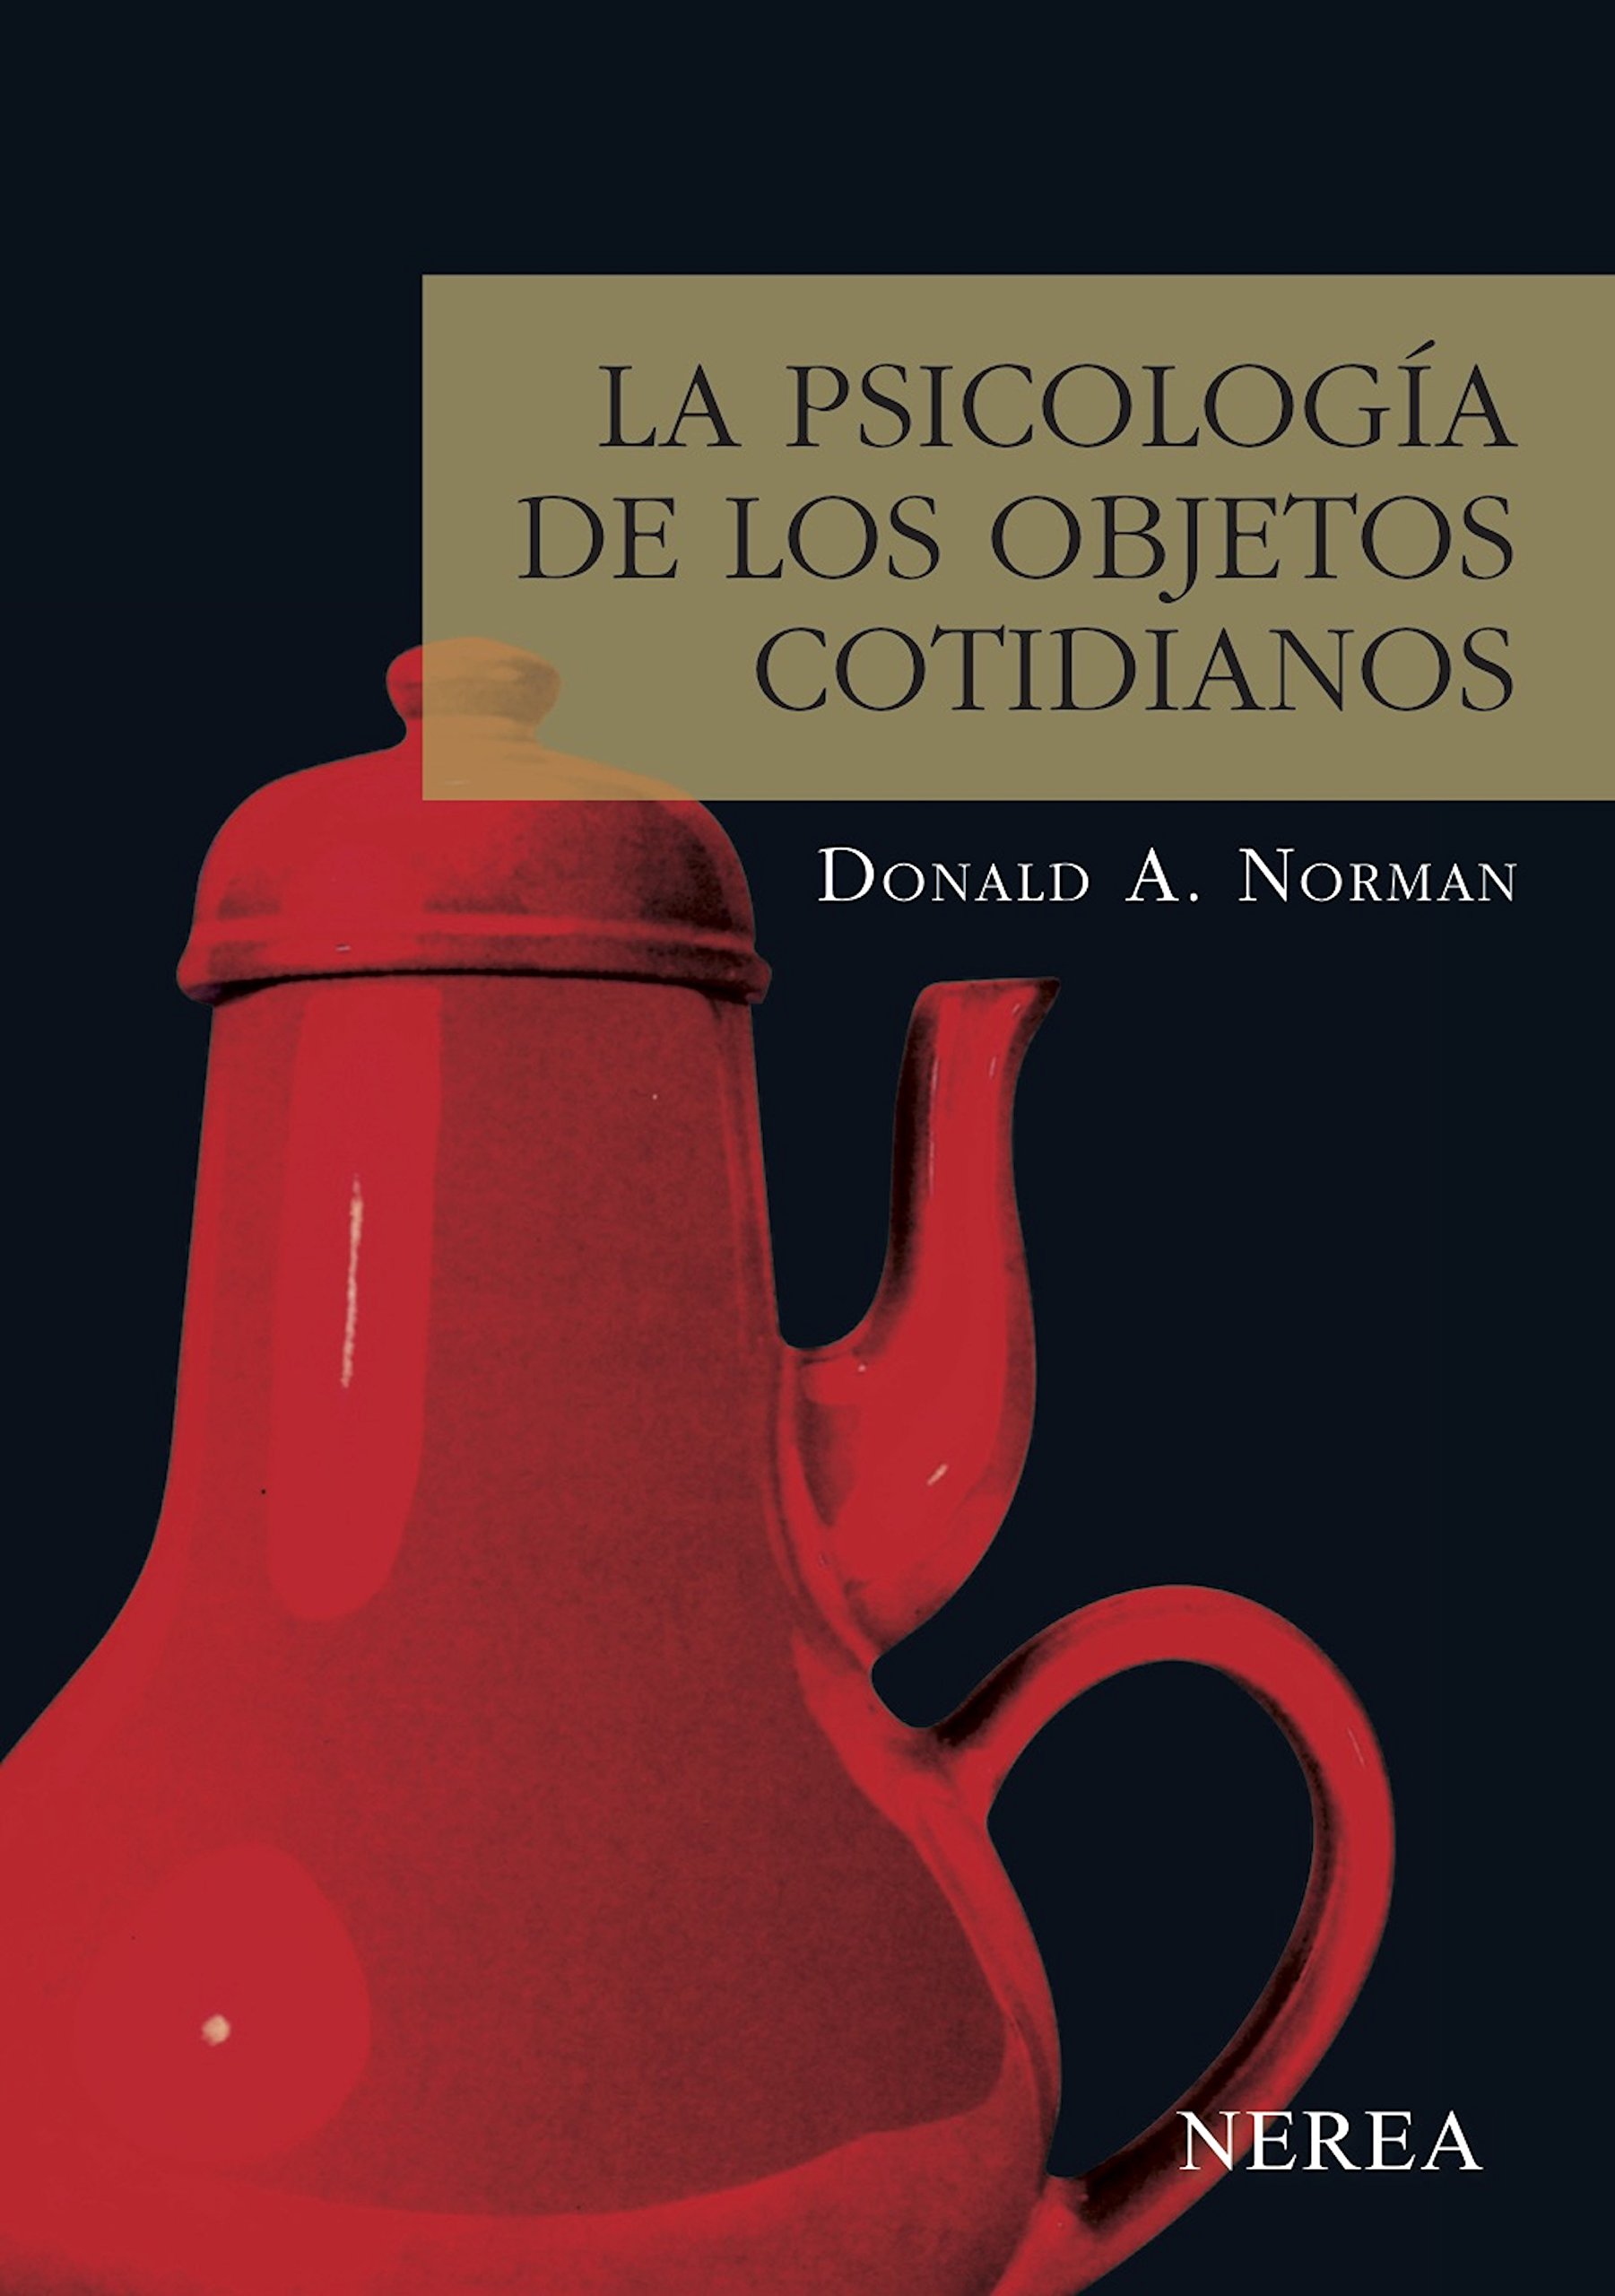 La psicología de los objetos cotidianos (Serie Media nº 6) (Spanish Edition)